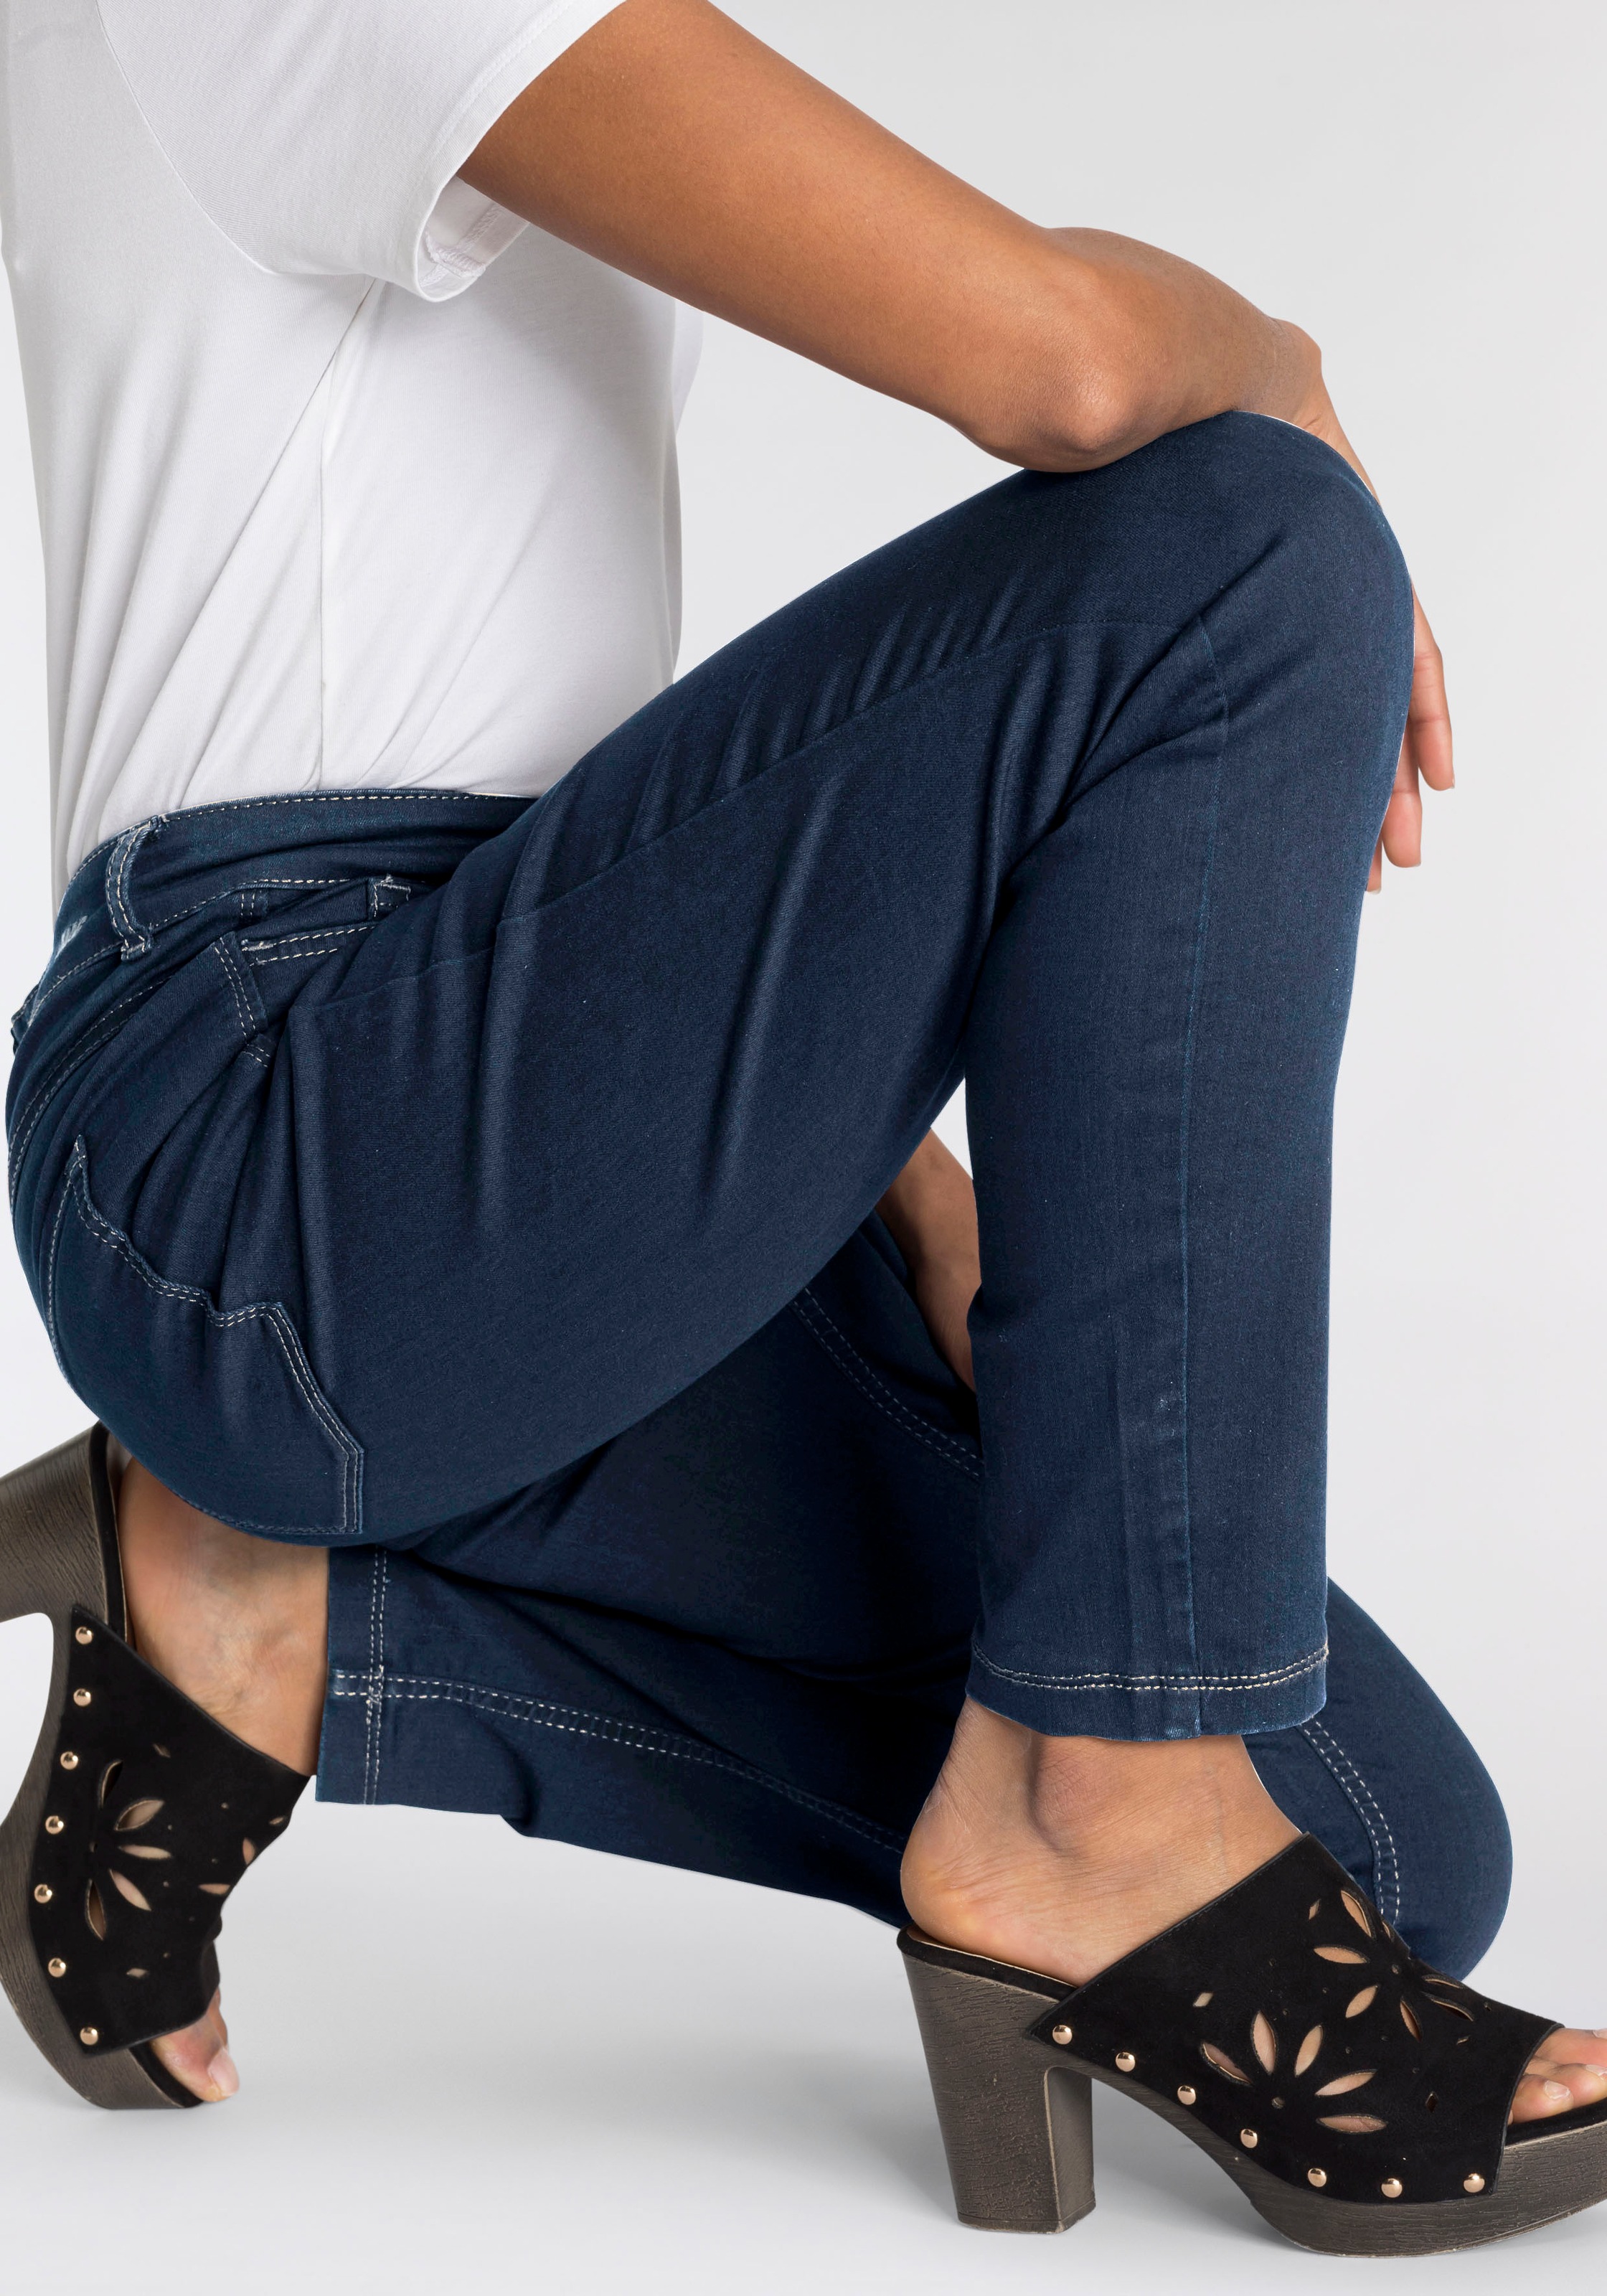 den sitzt ganzen bei Tag Skinny-fit-Jeans OTTOversand bequem Qualität »Hiperstretch-Skinny«, Power-Stretch MAC